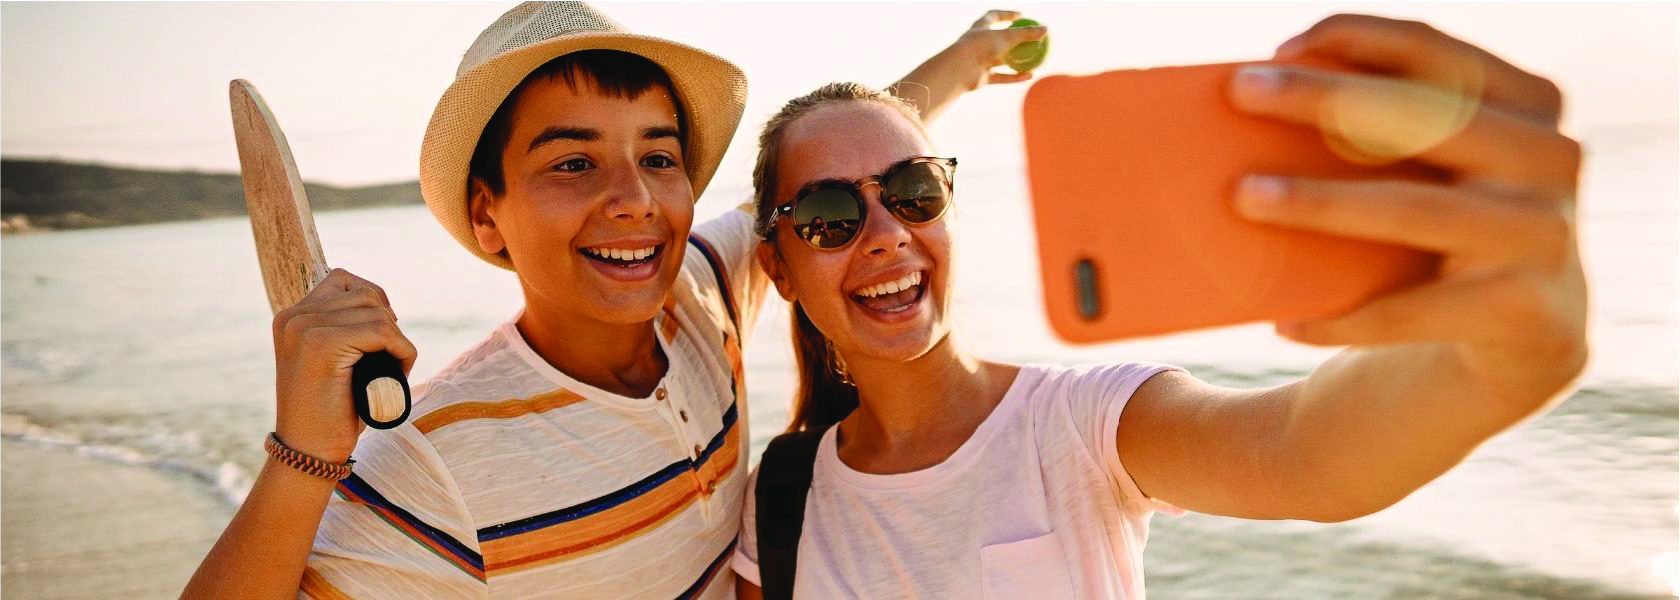 Ortho For Teens - Teens on Beach Taking Selfie